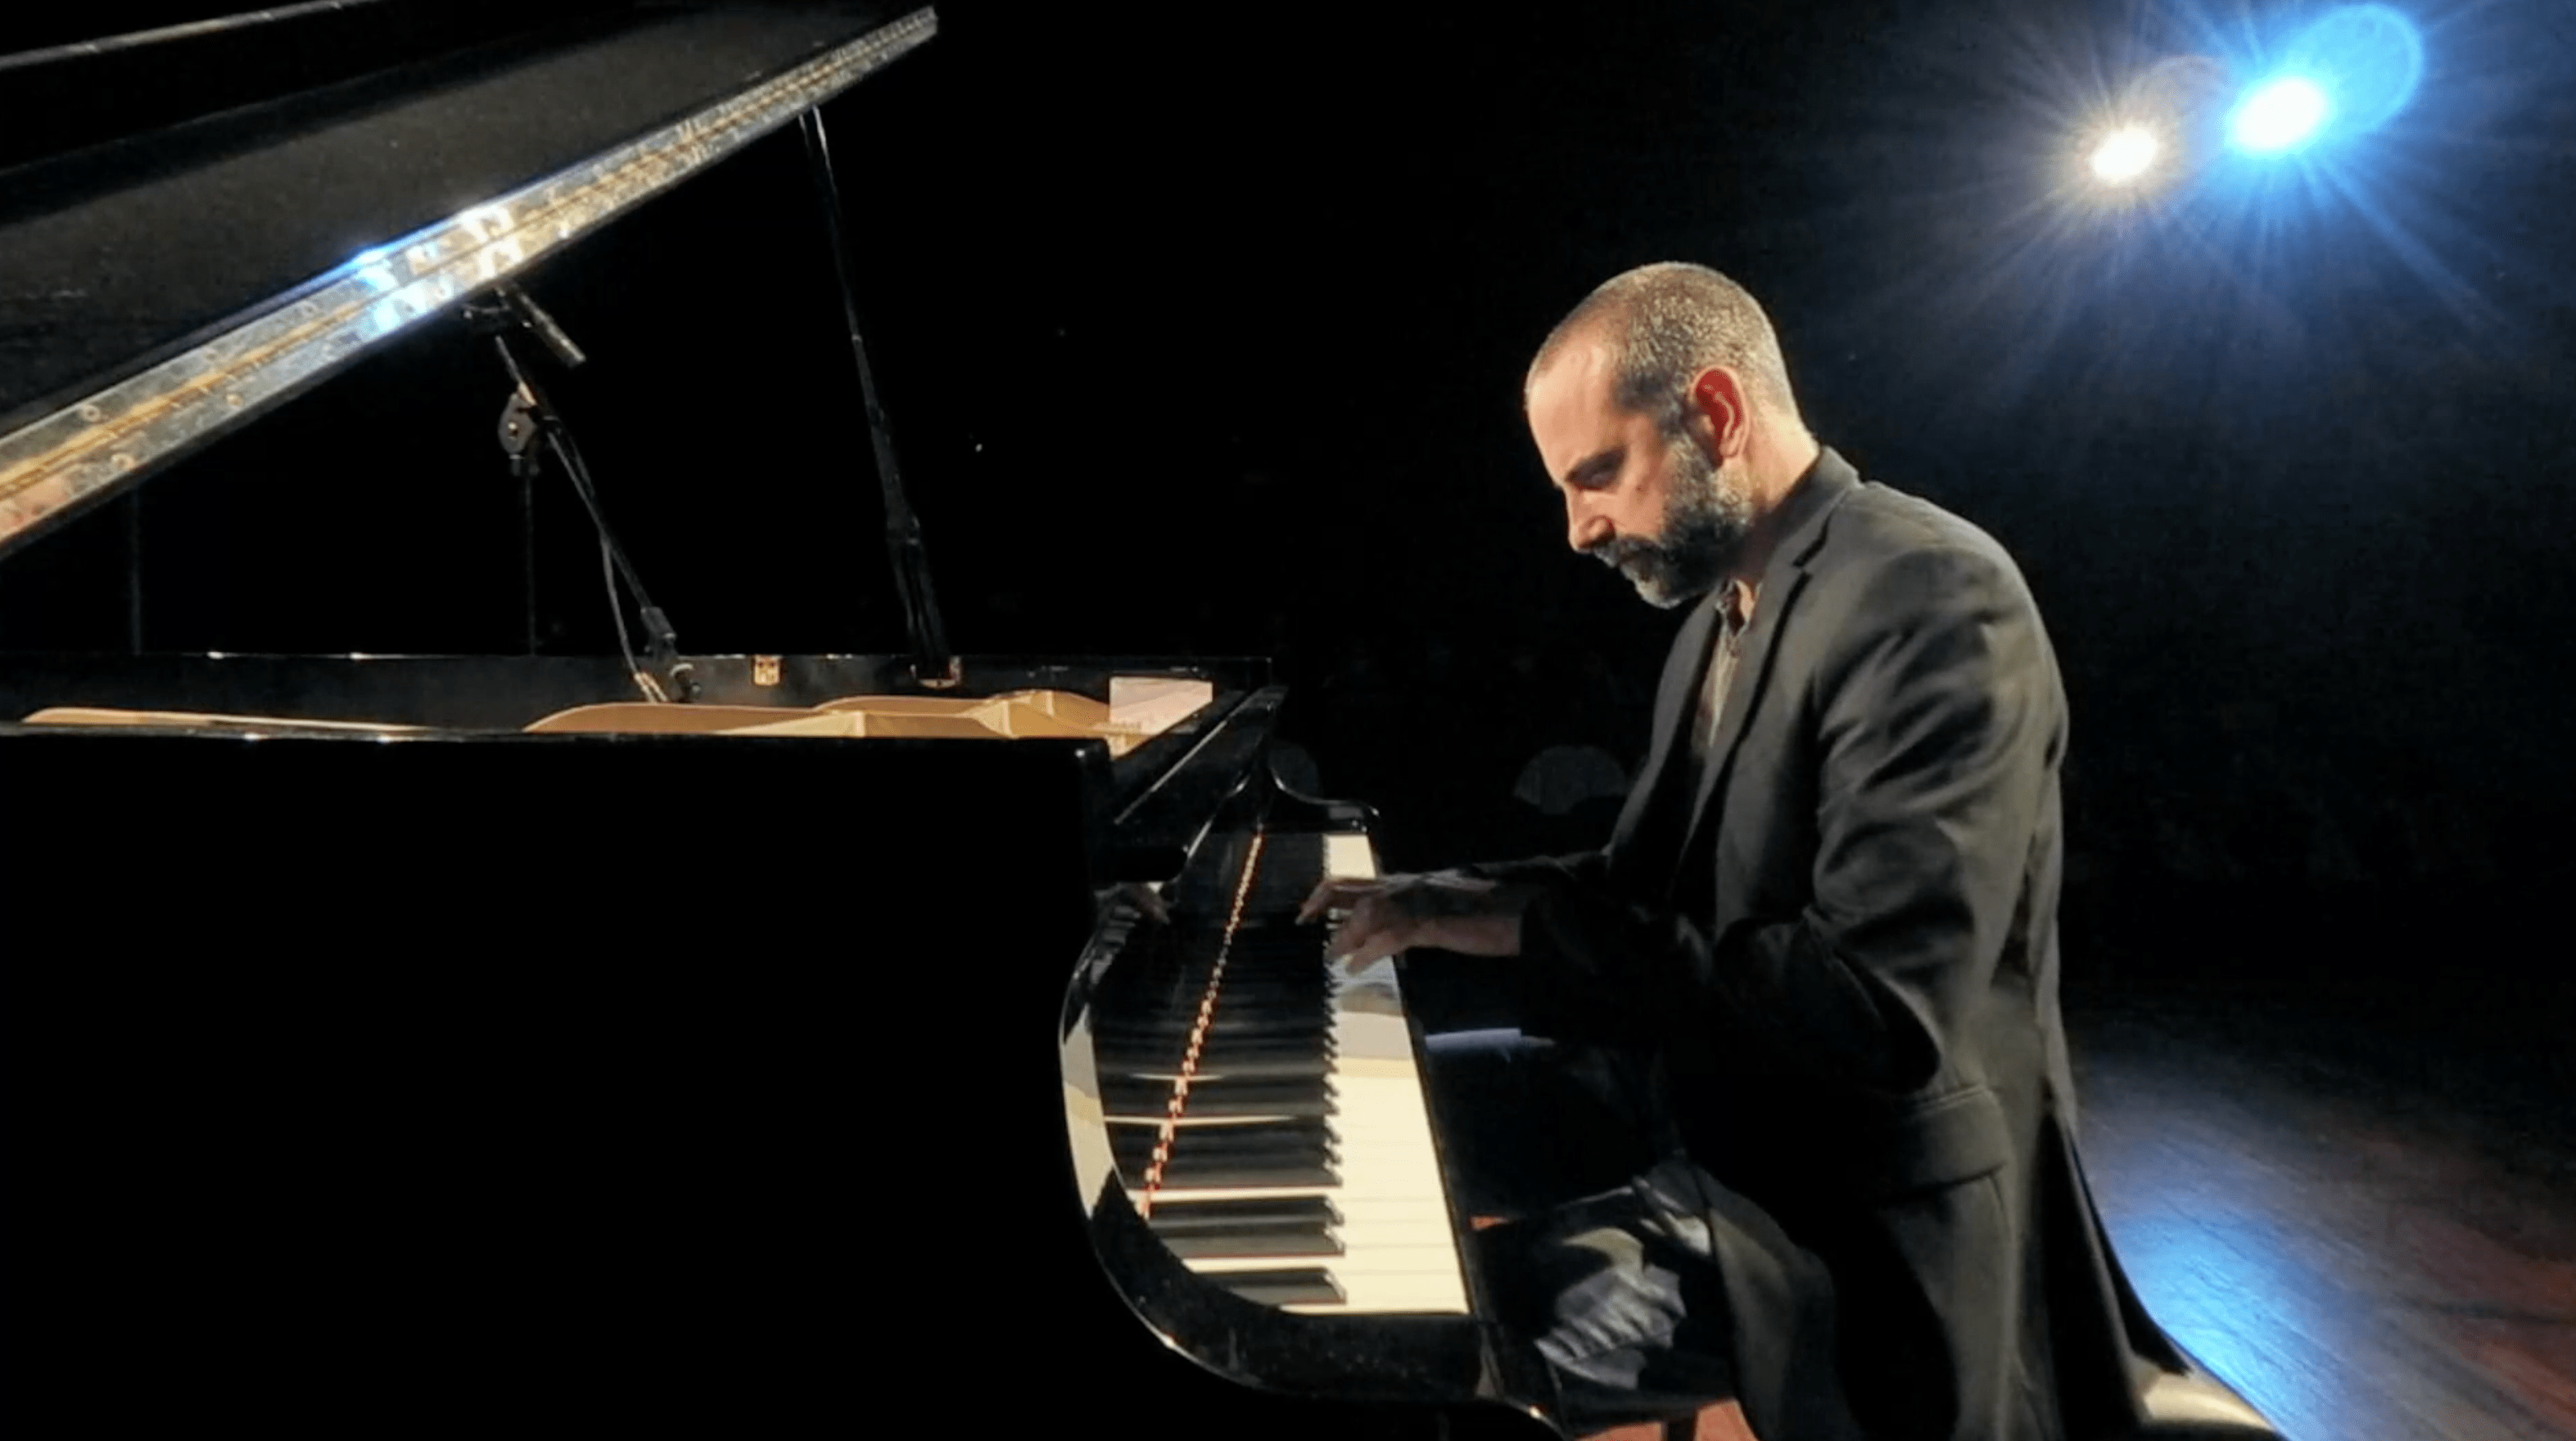 Luca Dell’Anna piano solo live 24 sept 2020